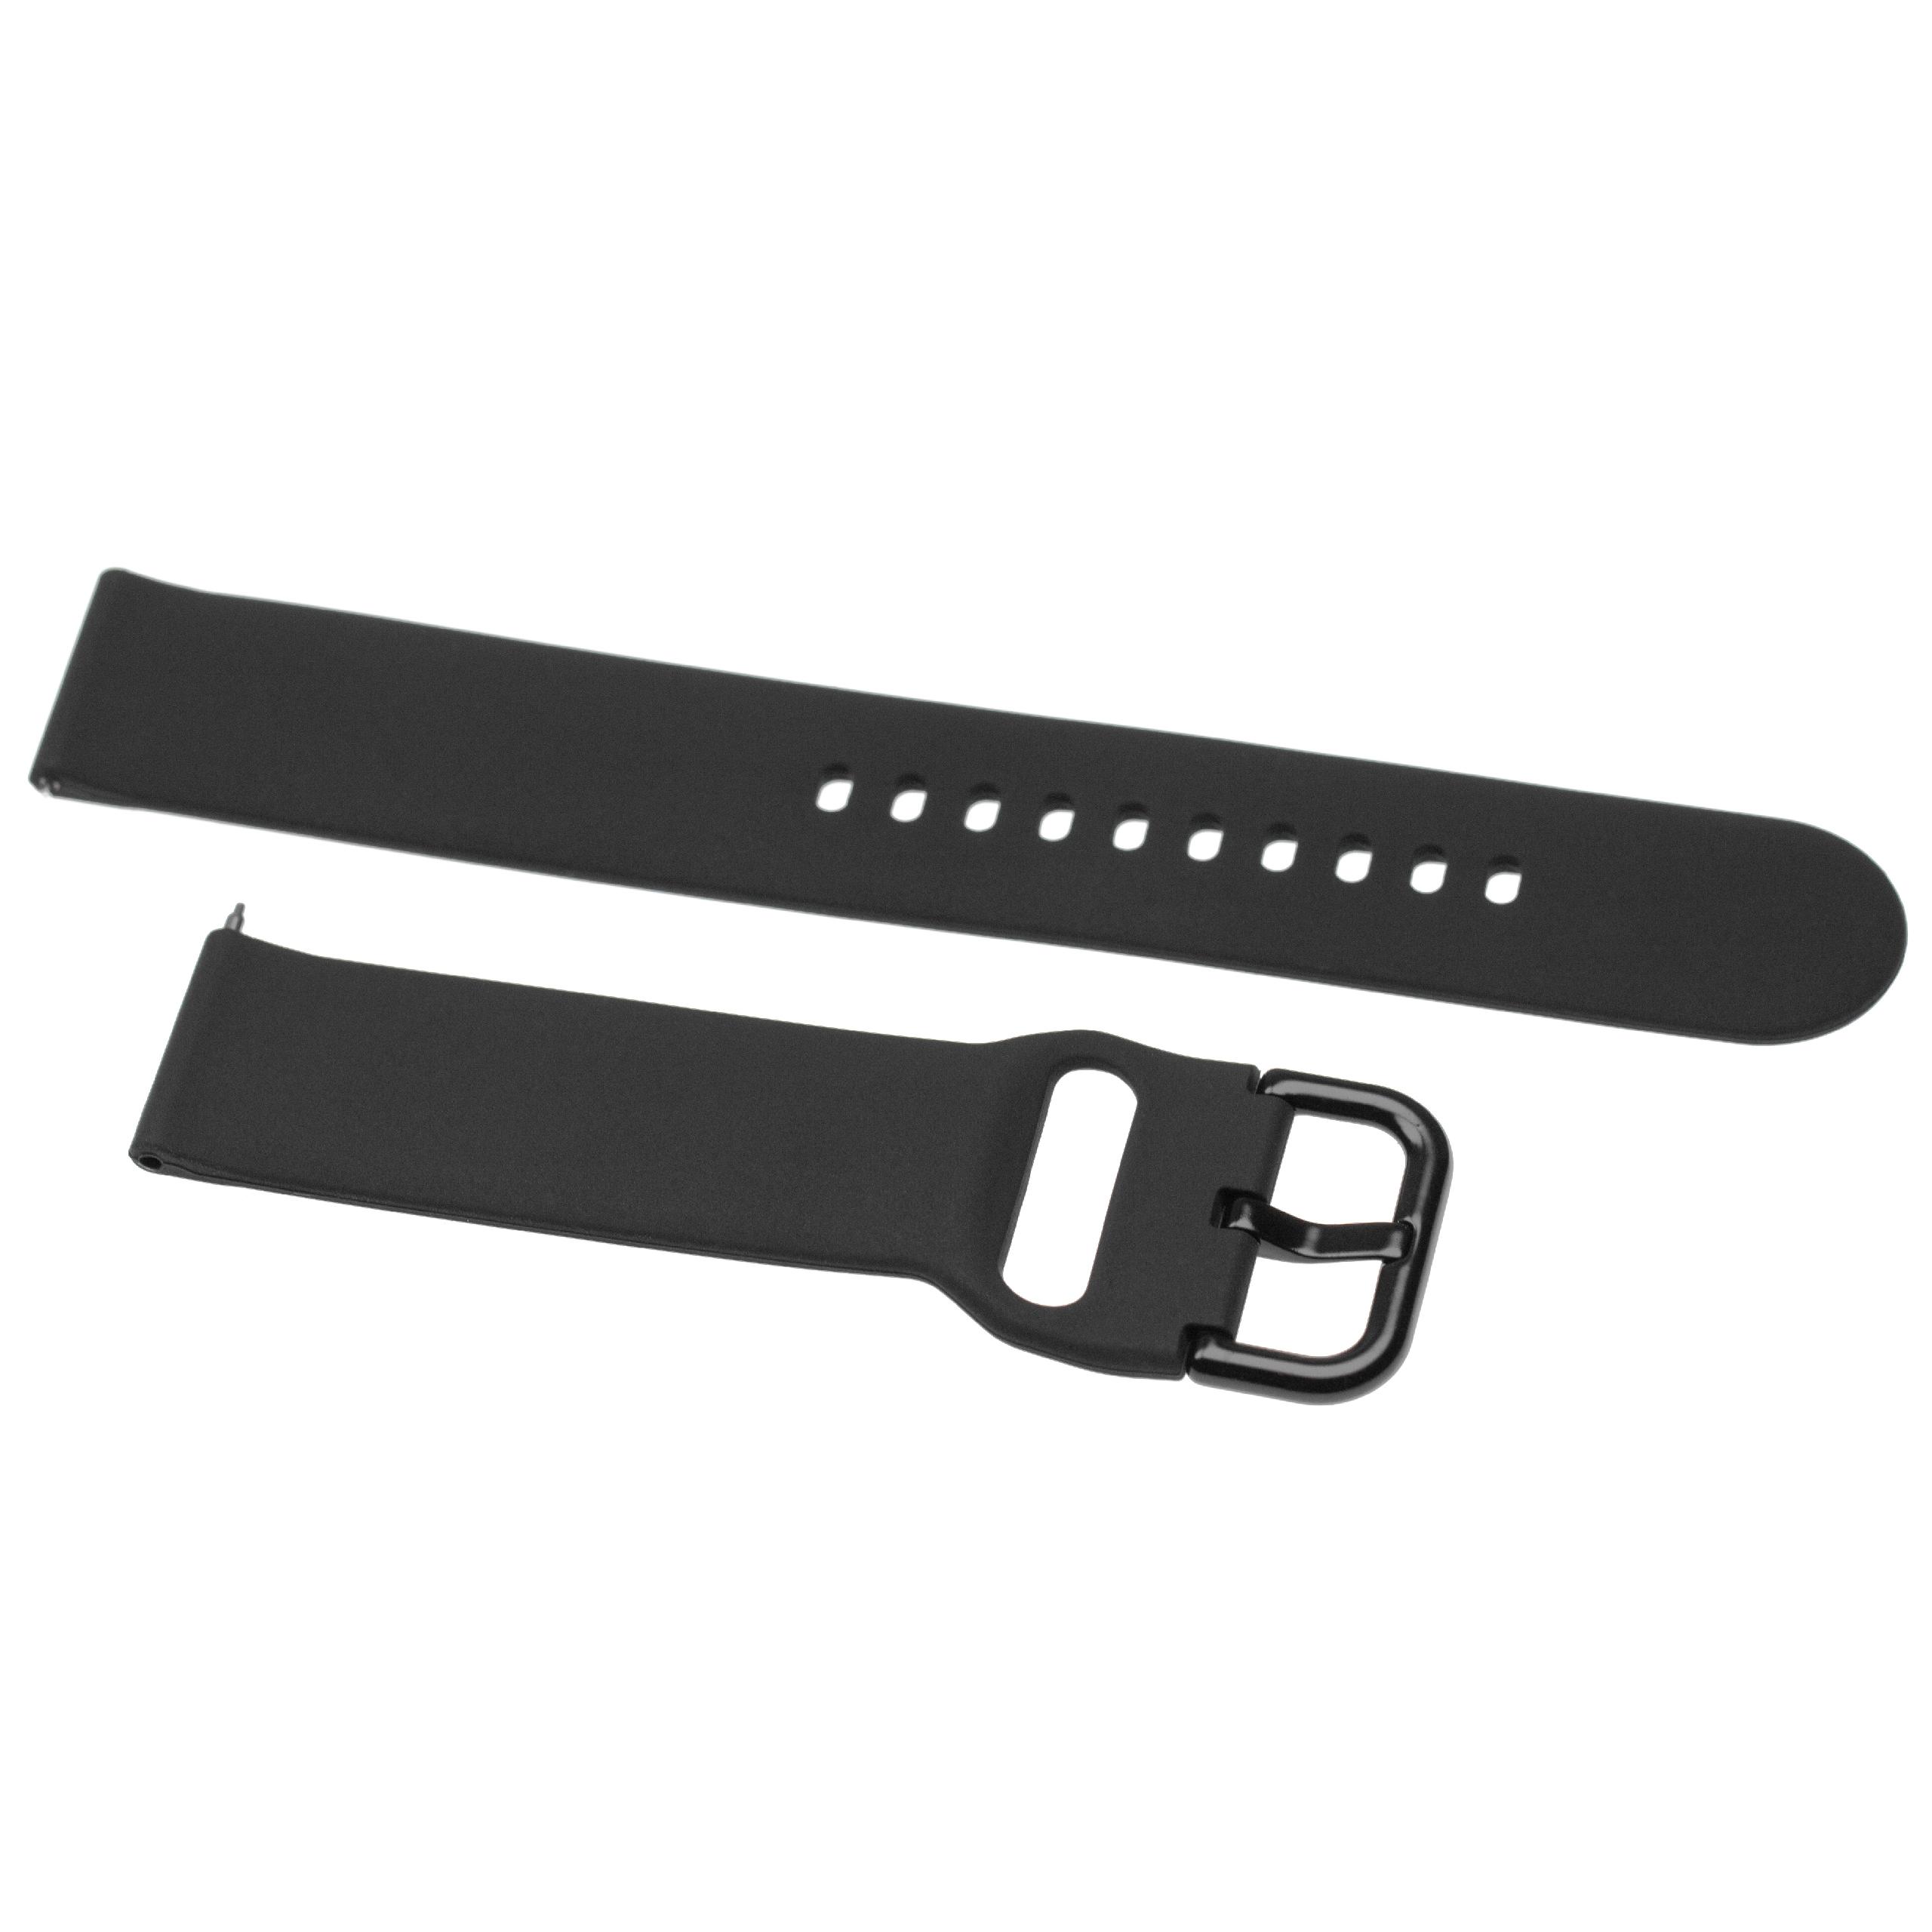 Pasek do smartwatch Samsung Galaxy Watch - dł. 13 + 8,8 cm, szer. 20 mm, silikon, czarny